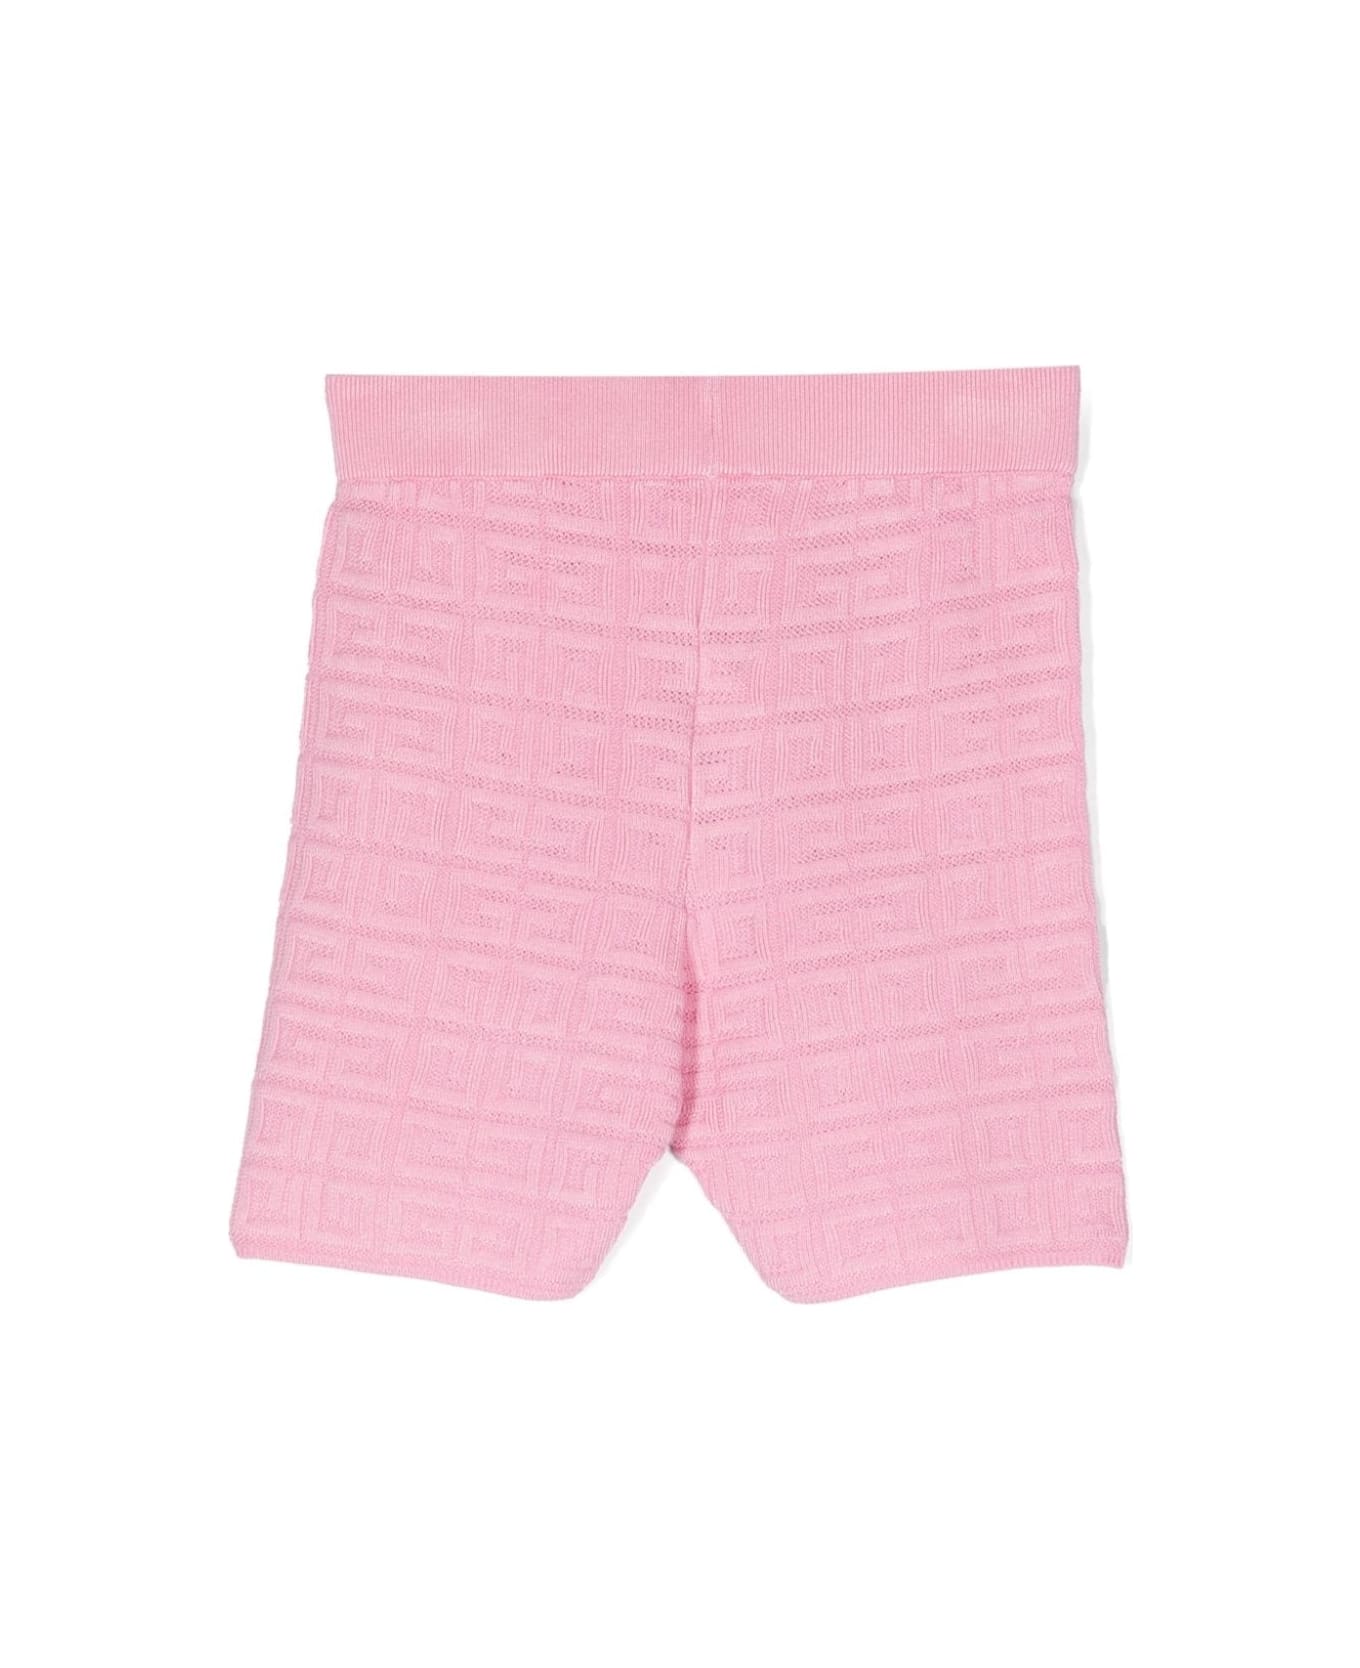 Givenchy Shorts With Jacquard Motif - Pink ボトムス